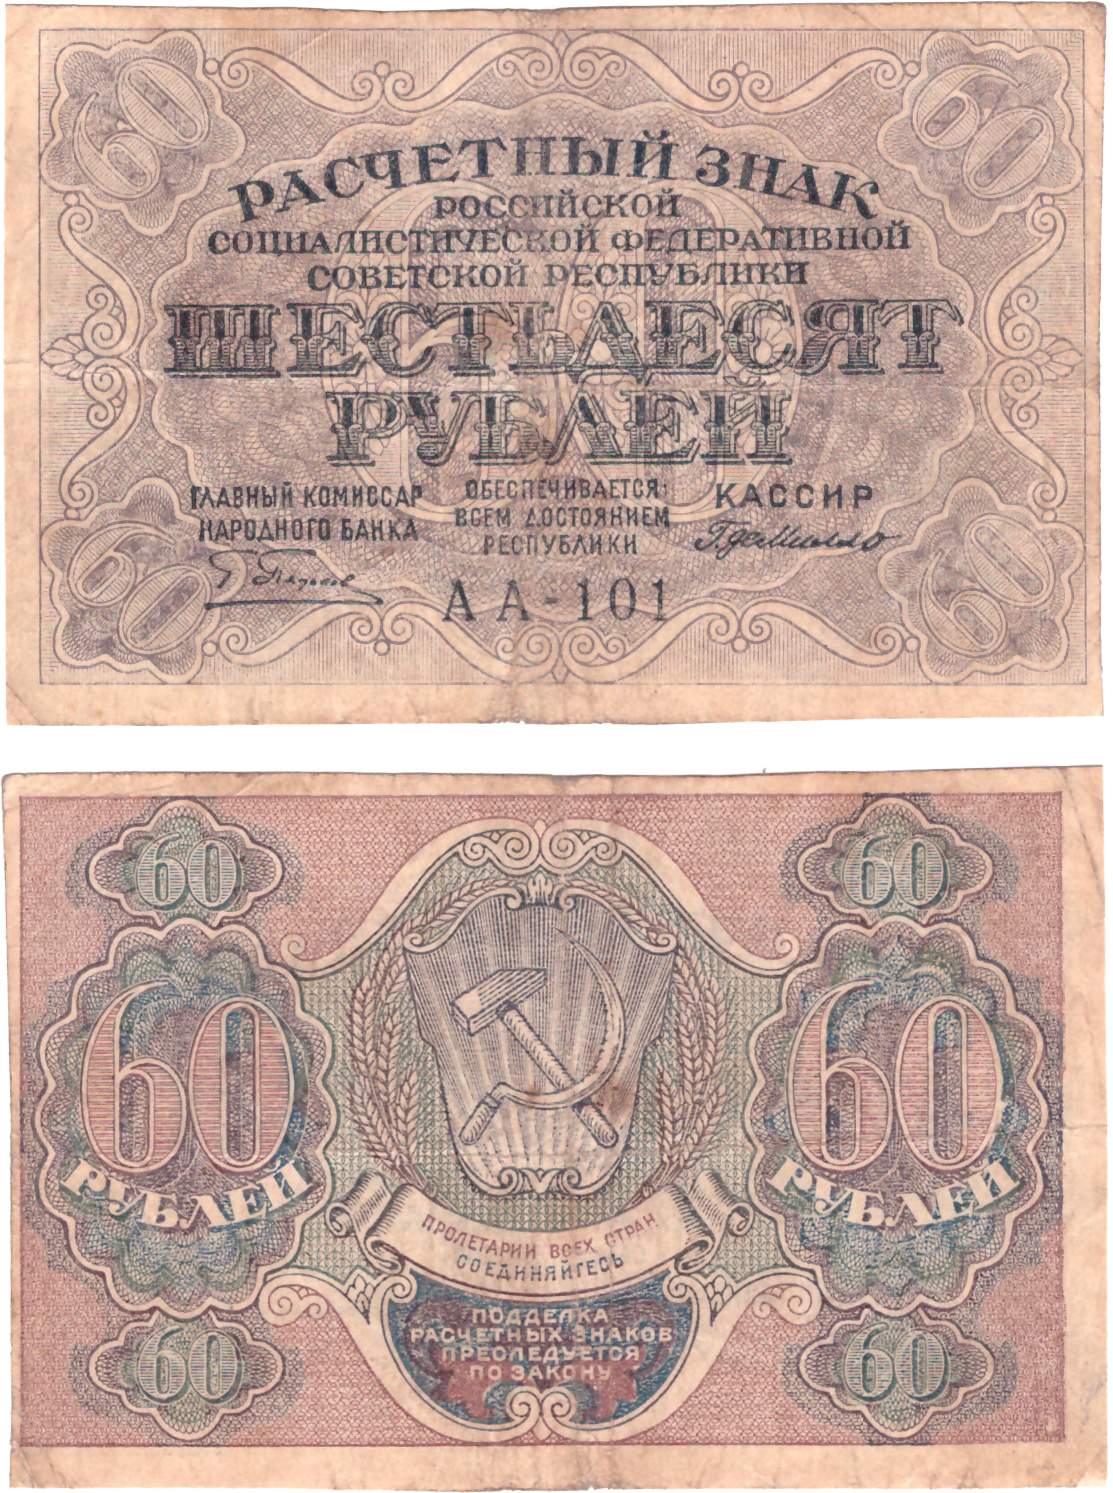 Сто шестьдесят рублей